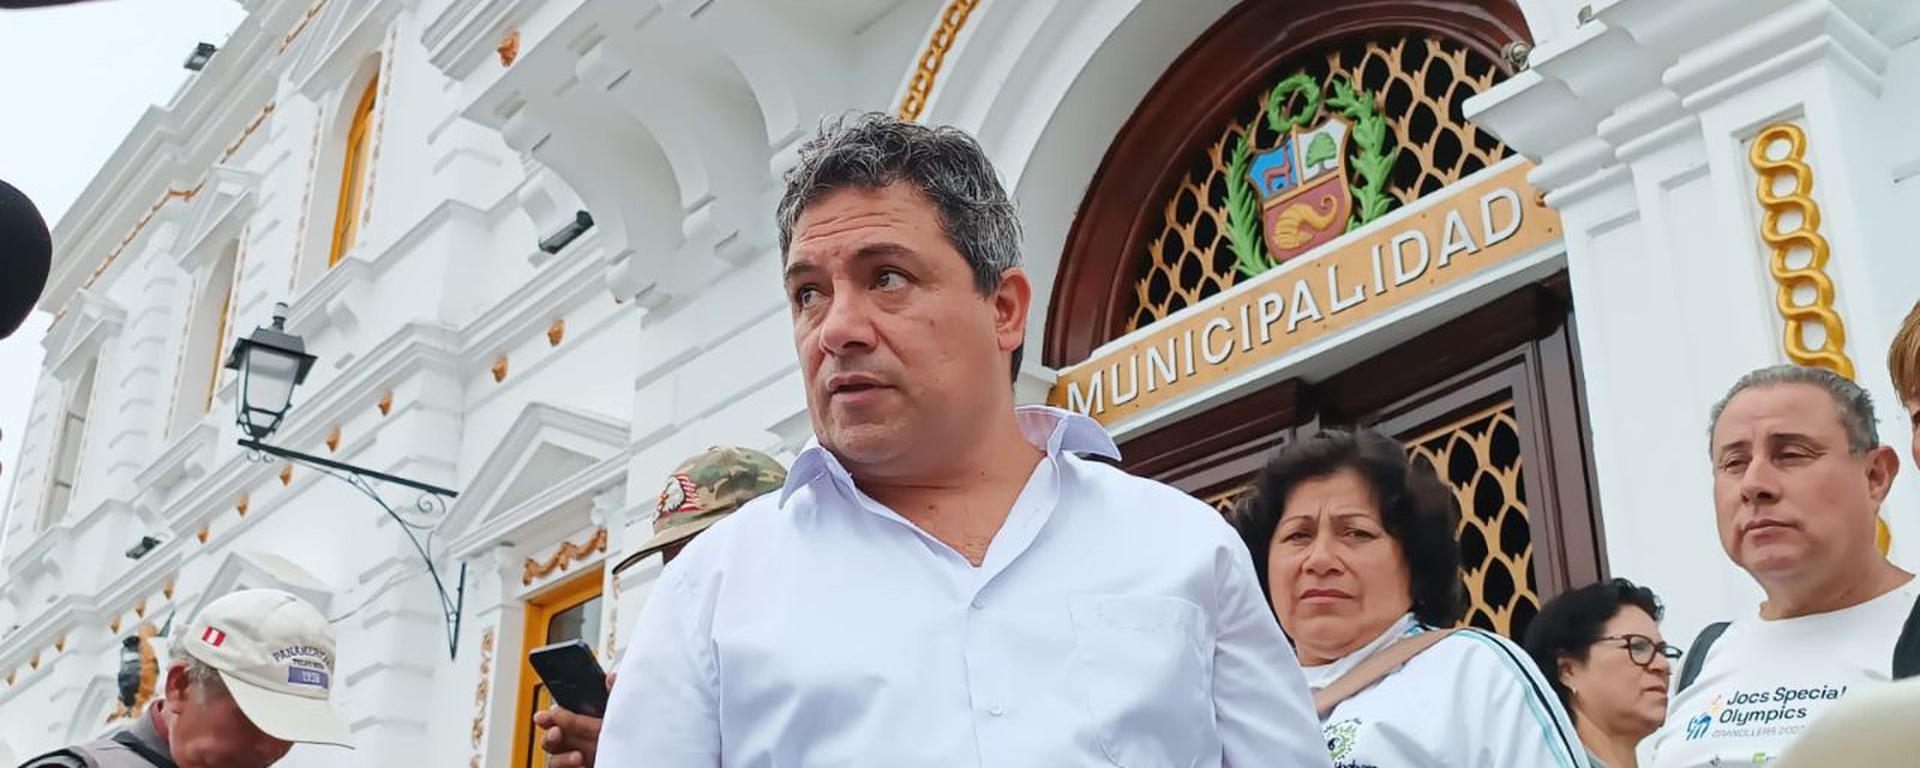 Arturo Fernández suspendido: antecedentes del cuestionado acalde de Trujillo